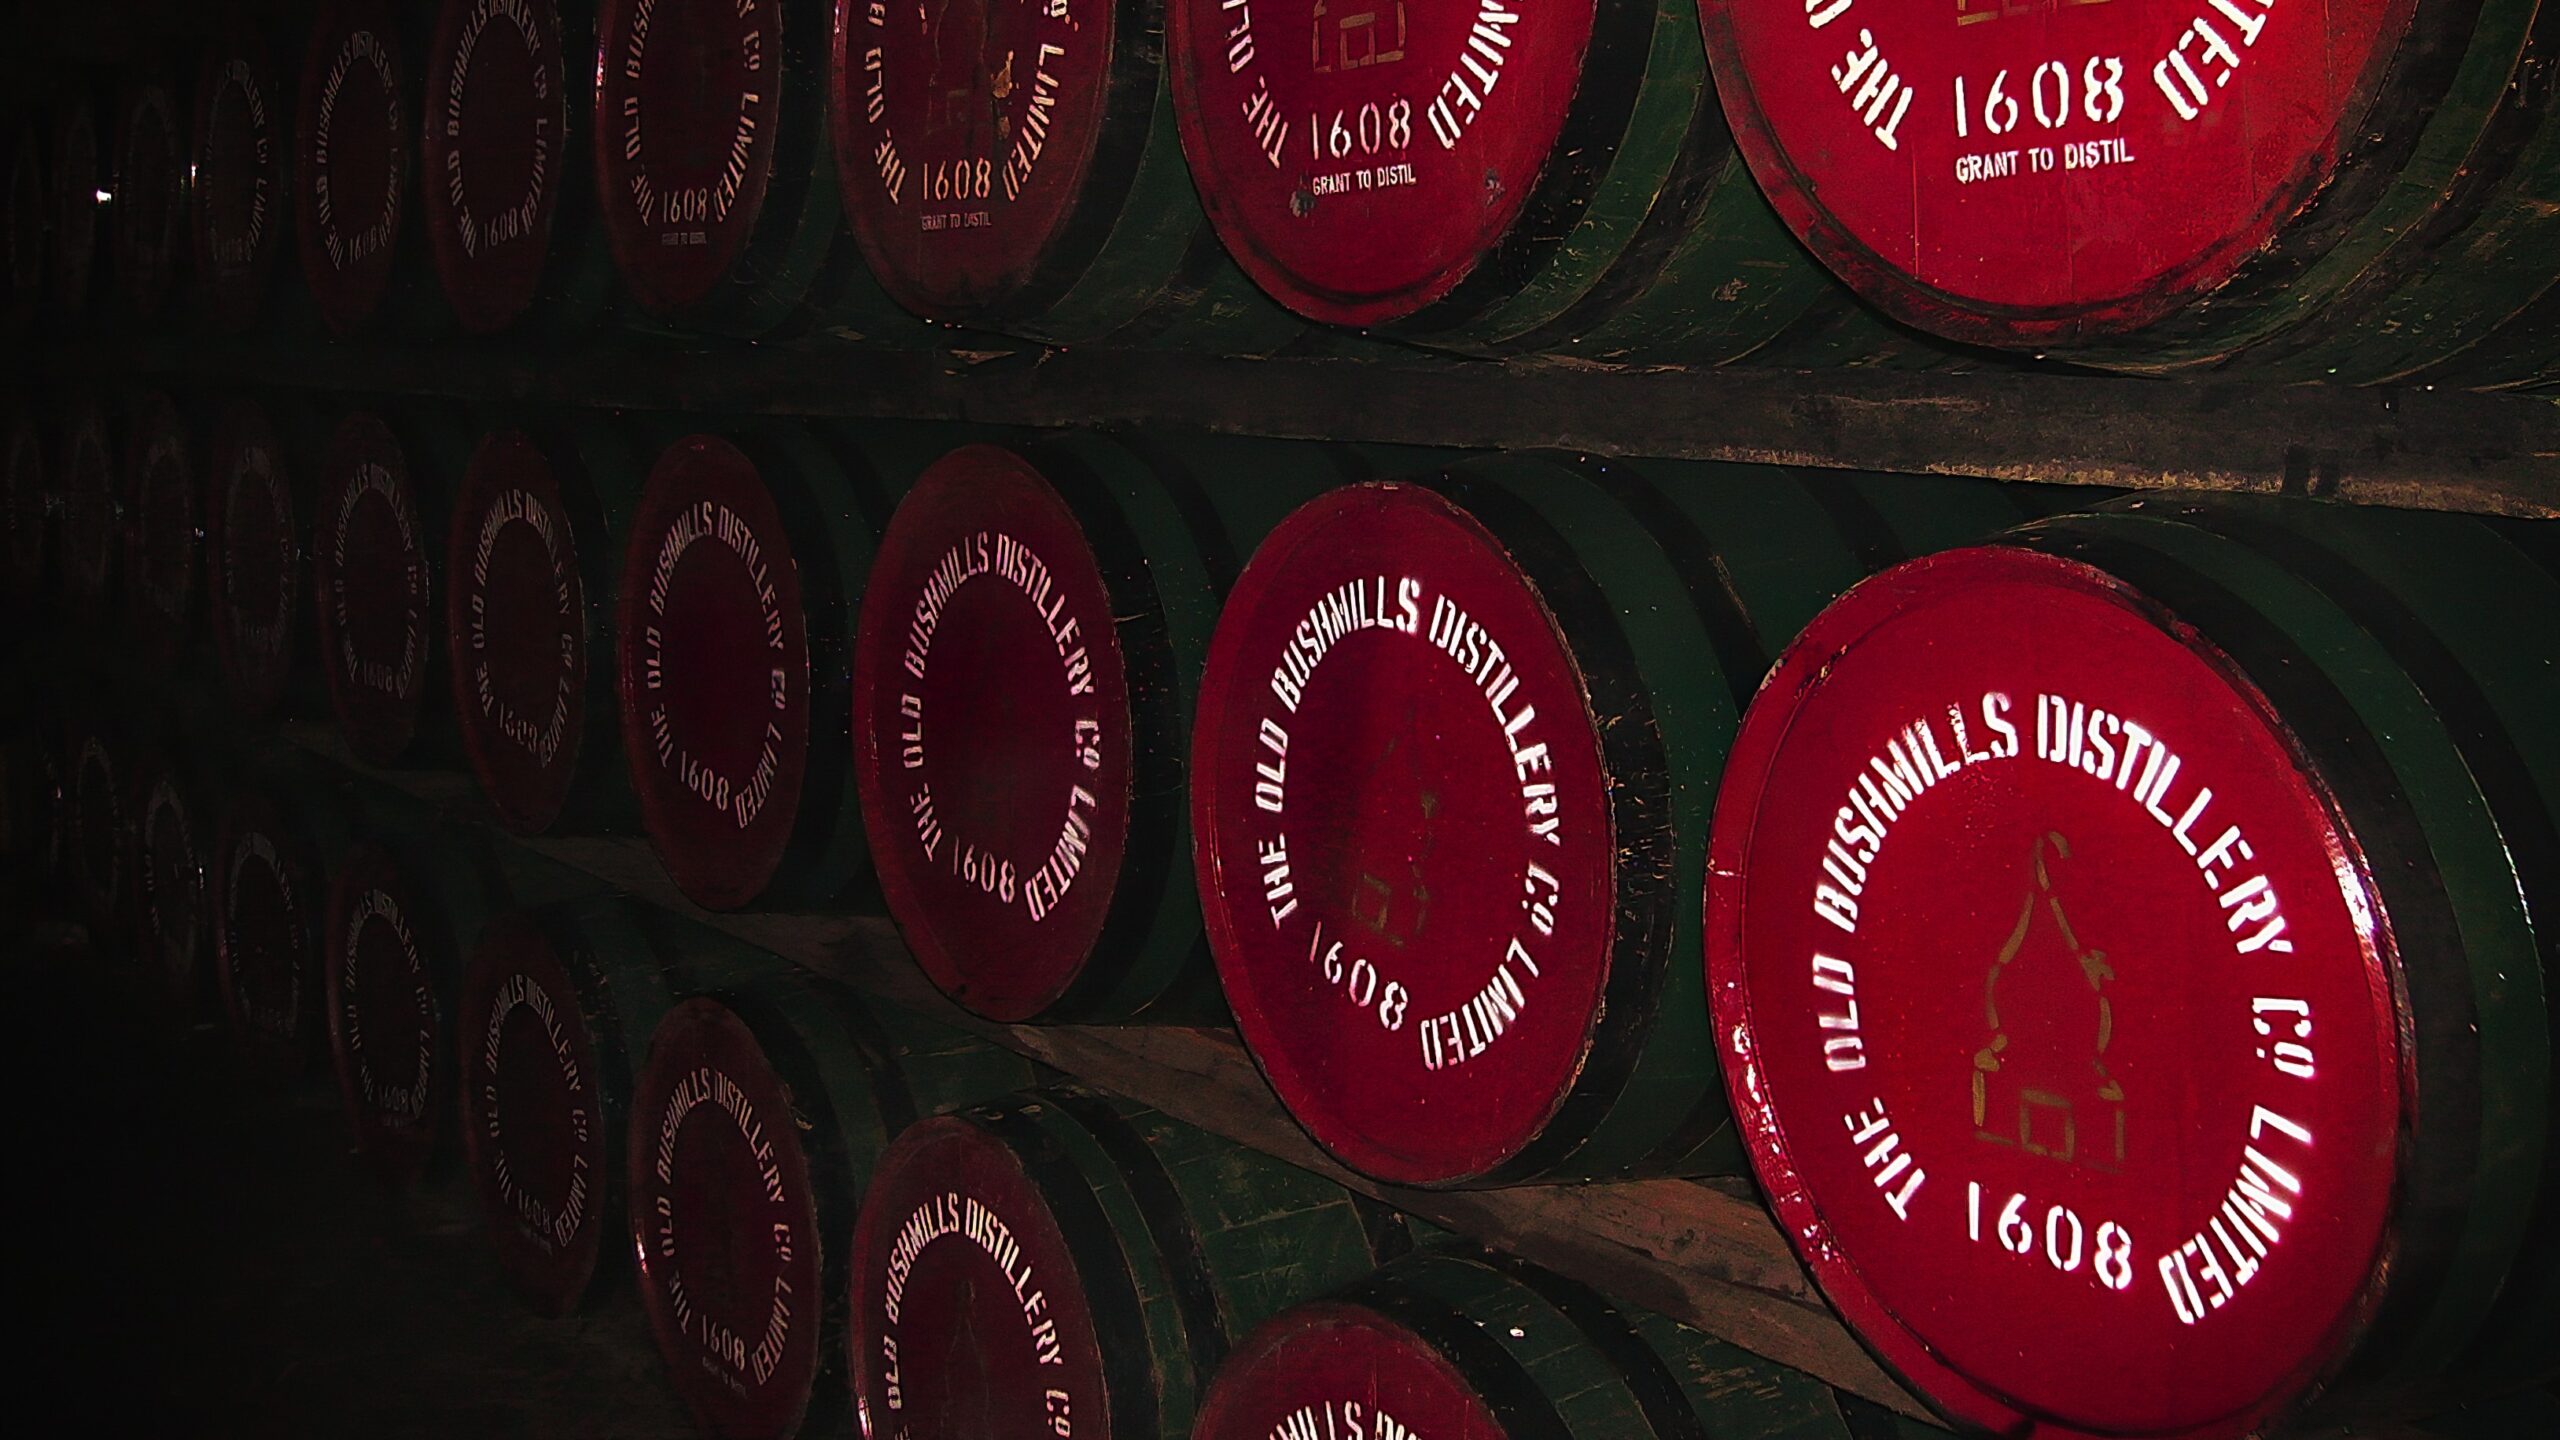 Bushmills whiskey barrels